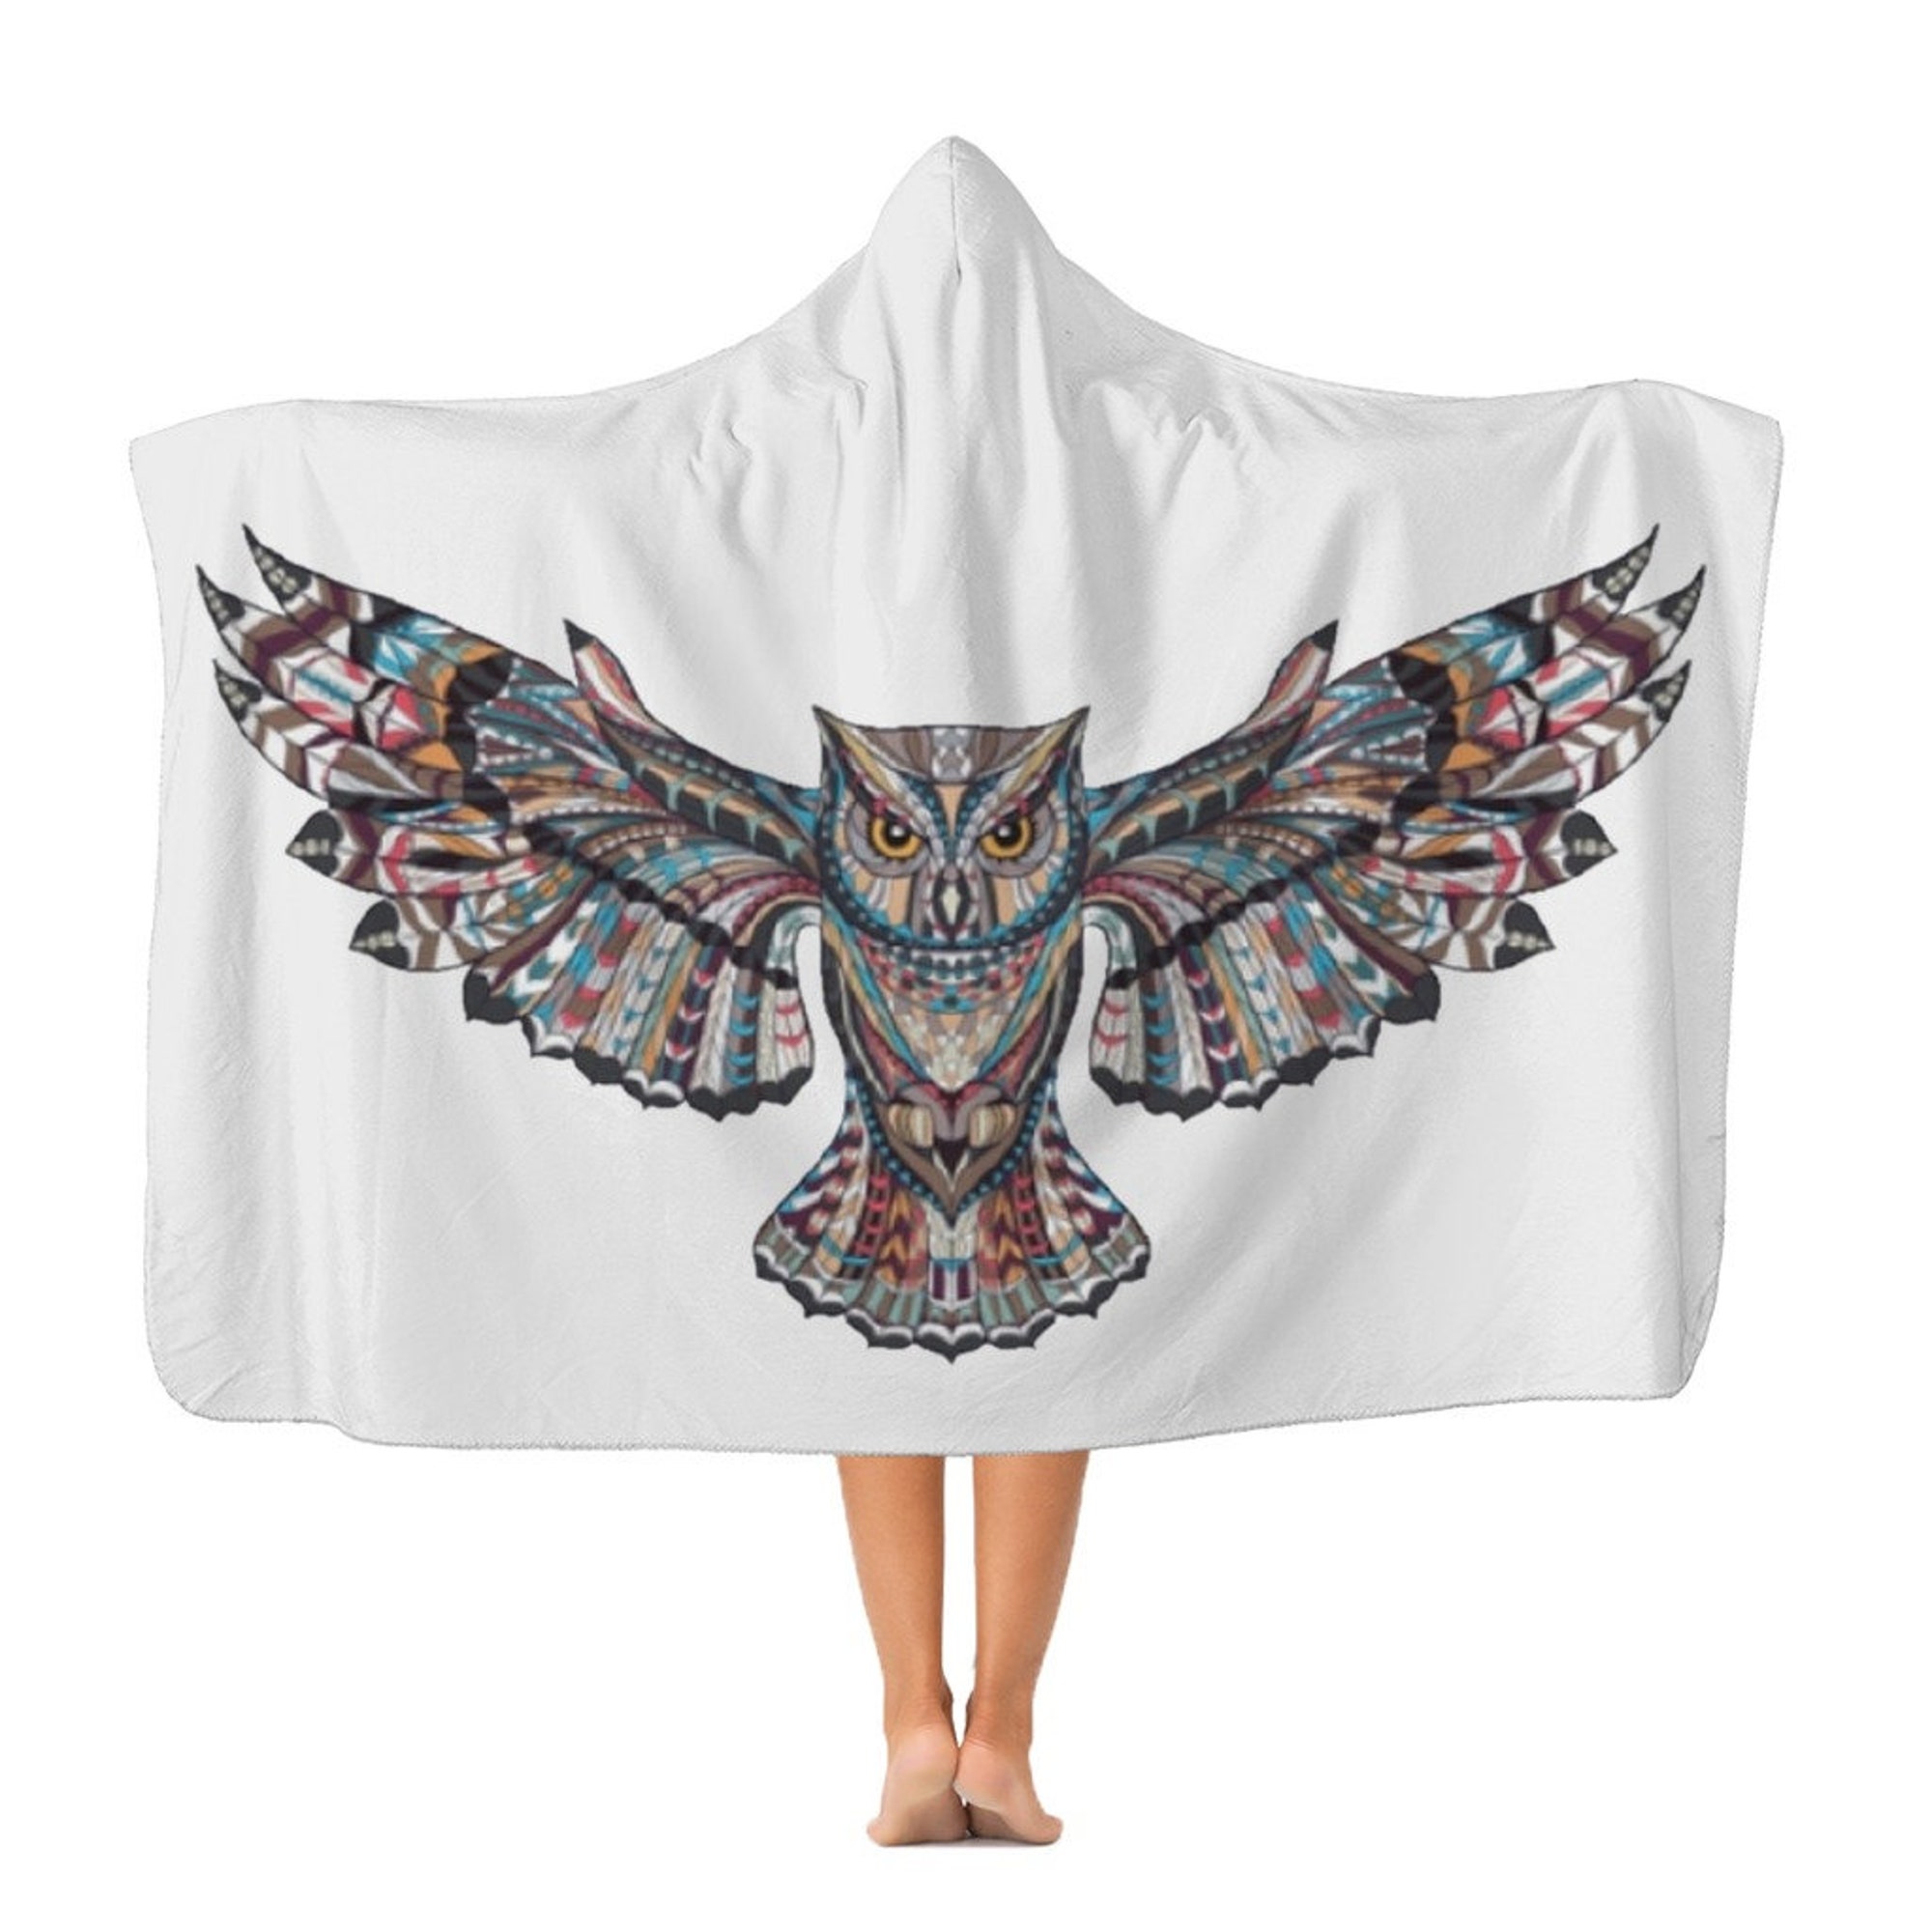 Adult Hooded Blanket